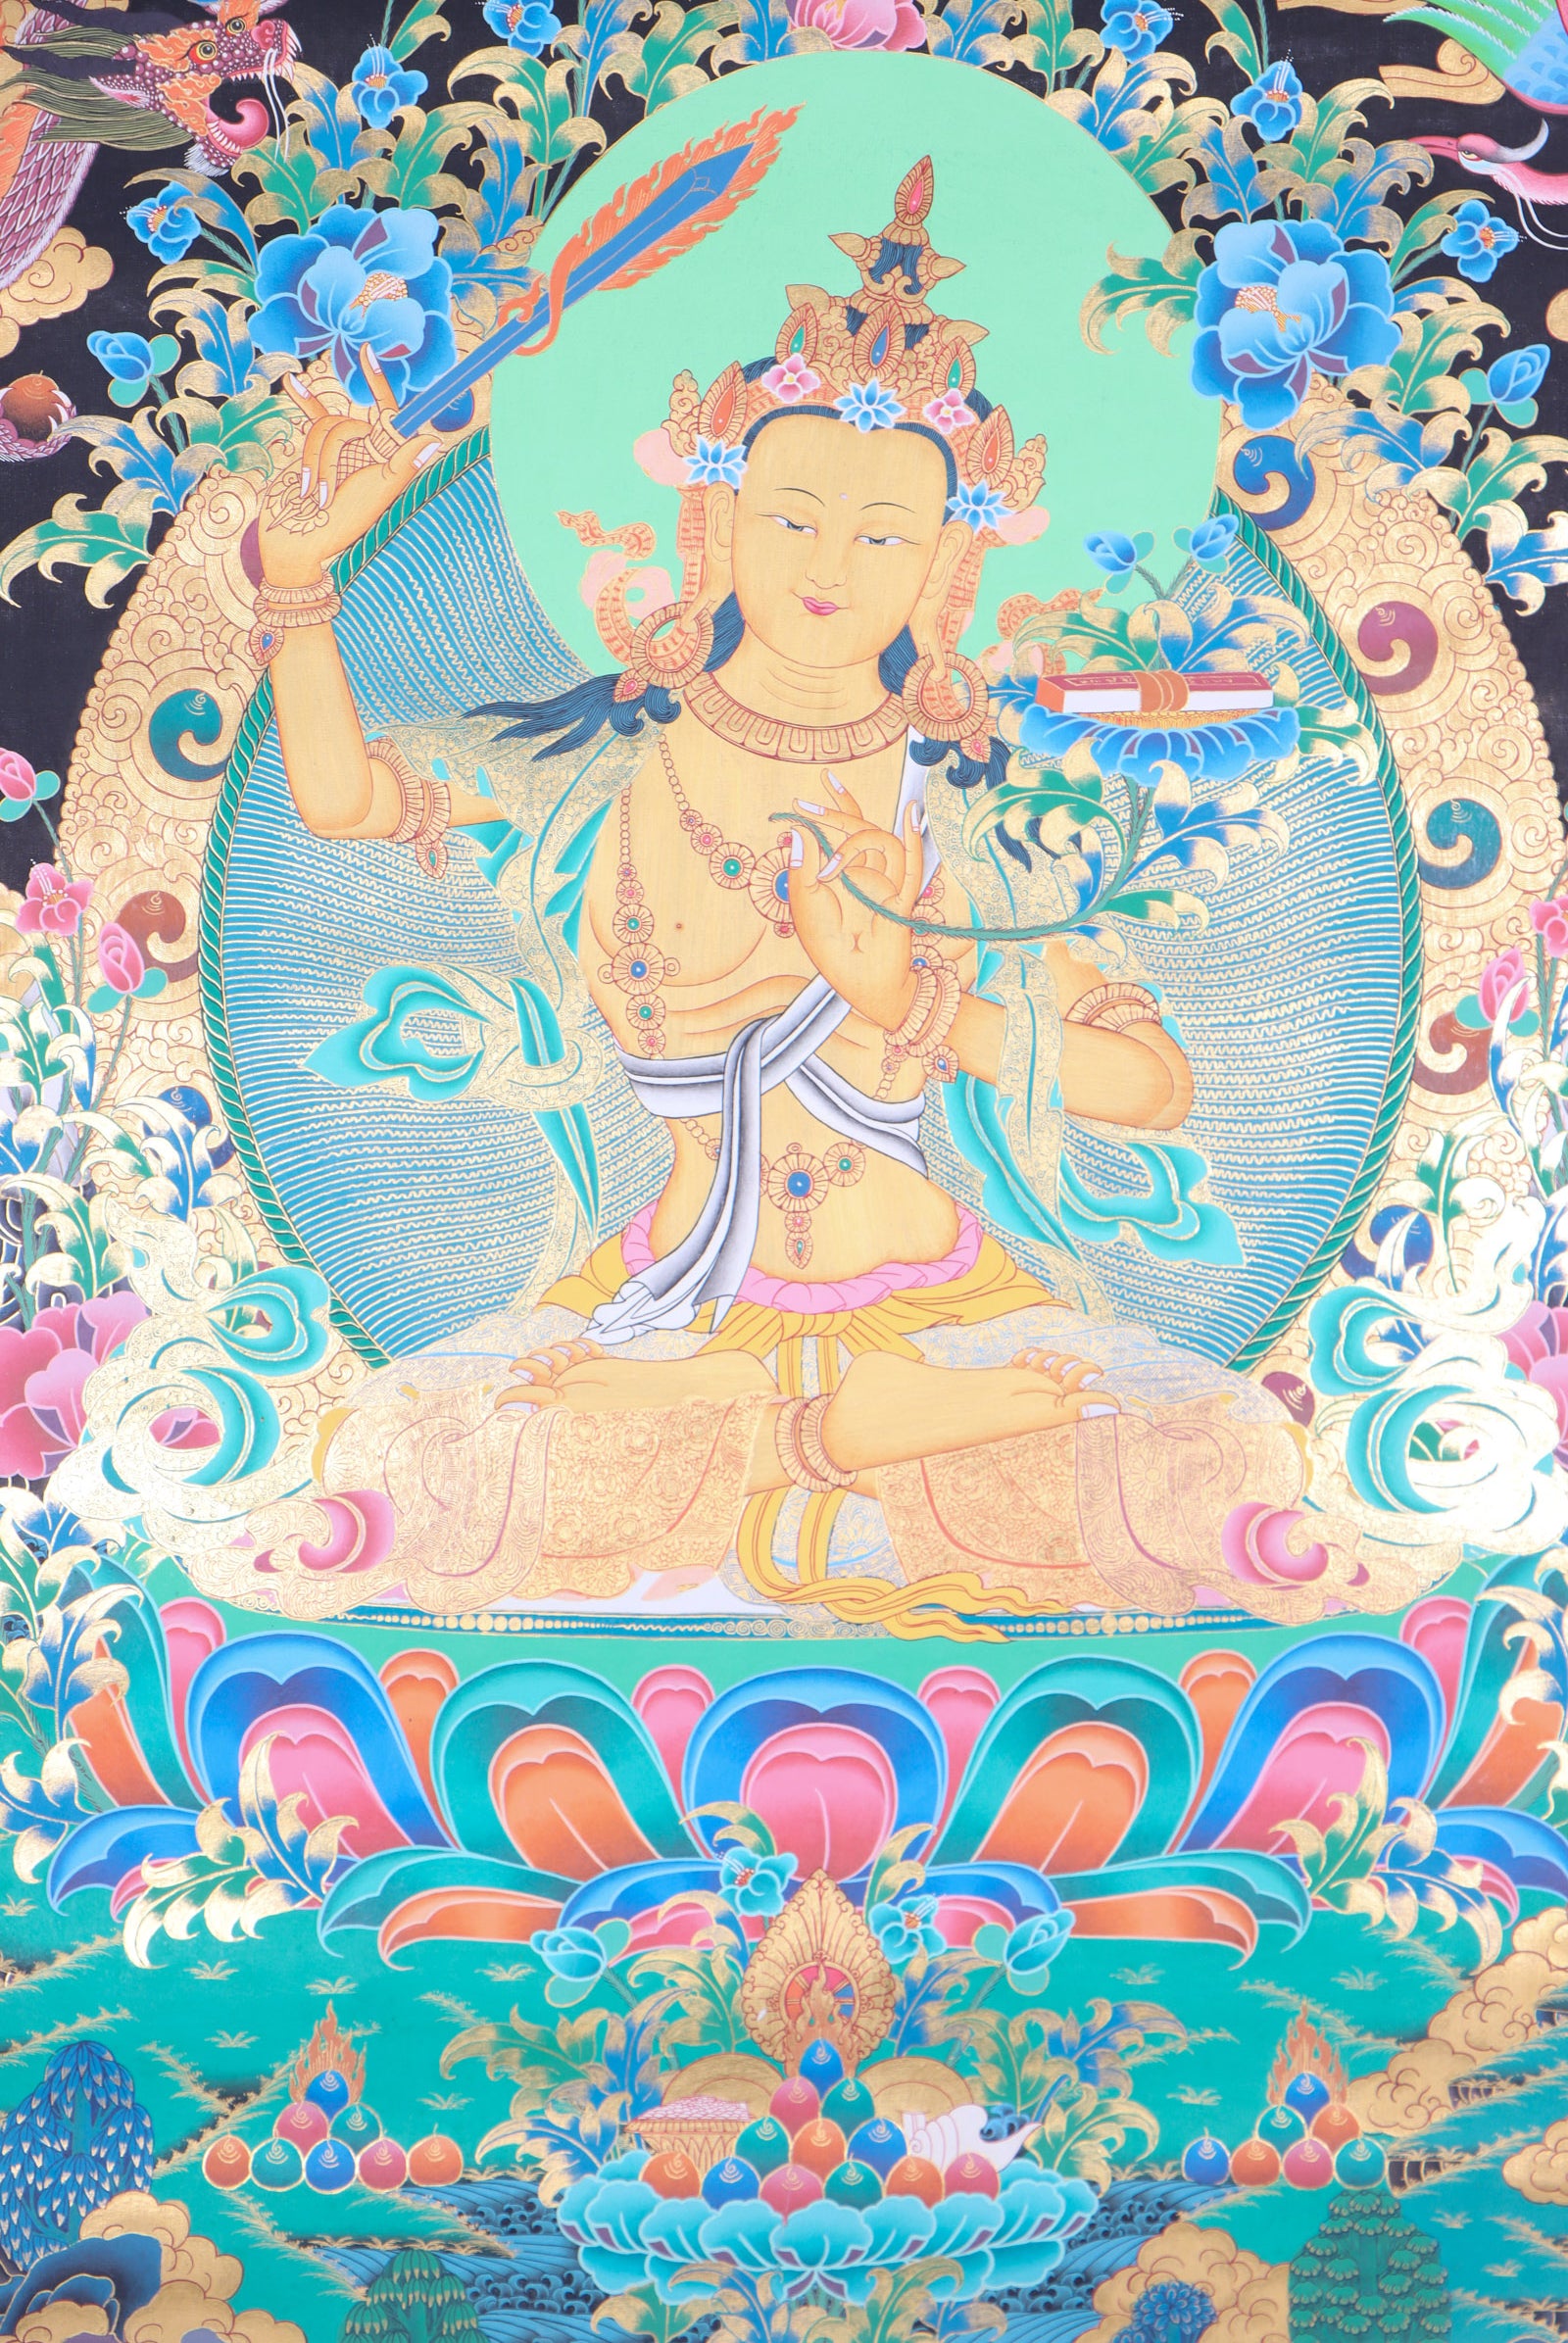 Manjushri Thangka Painting for wisdom and enlightment.